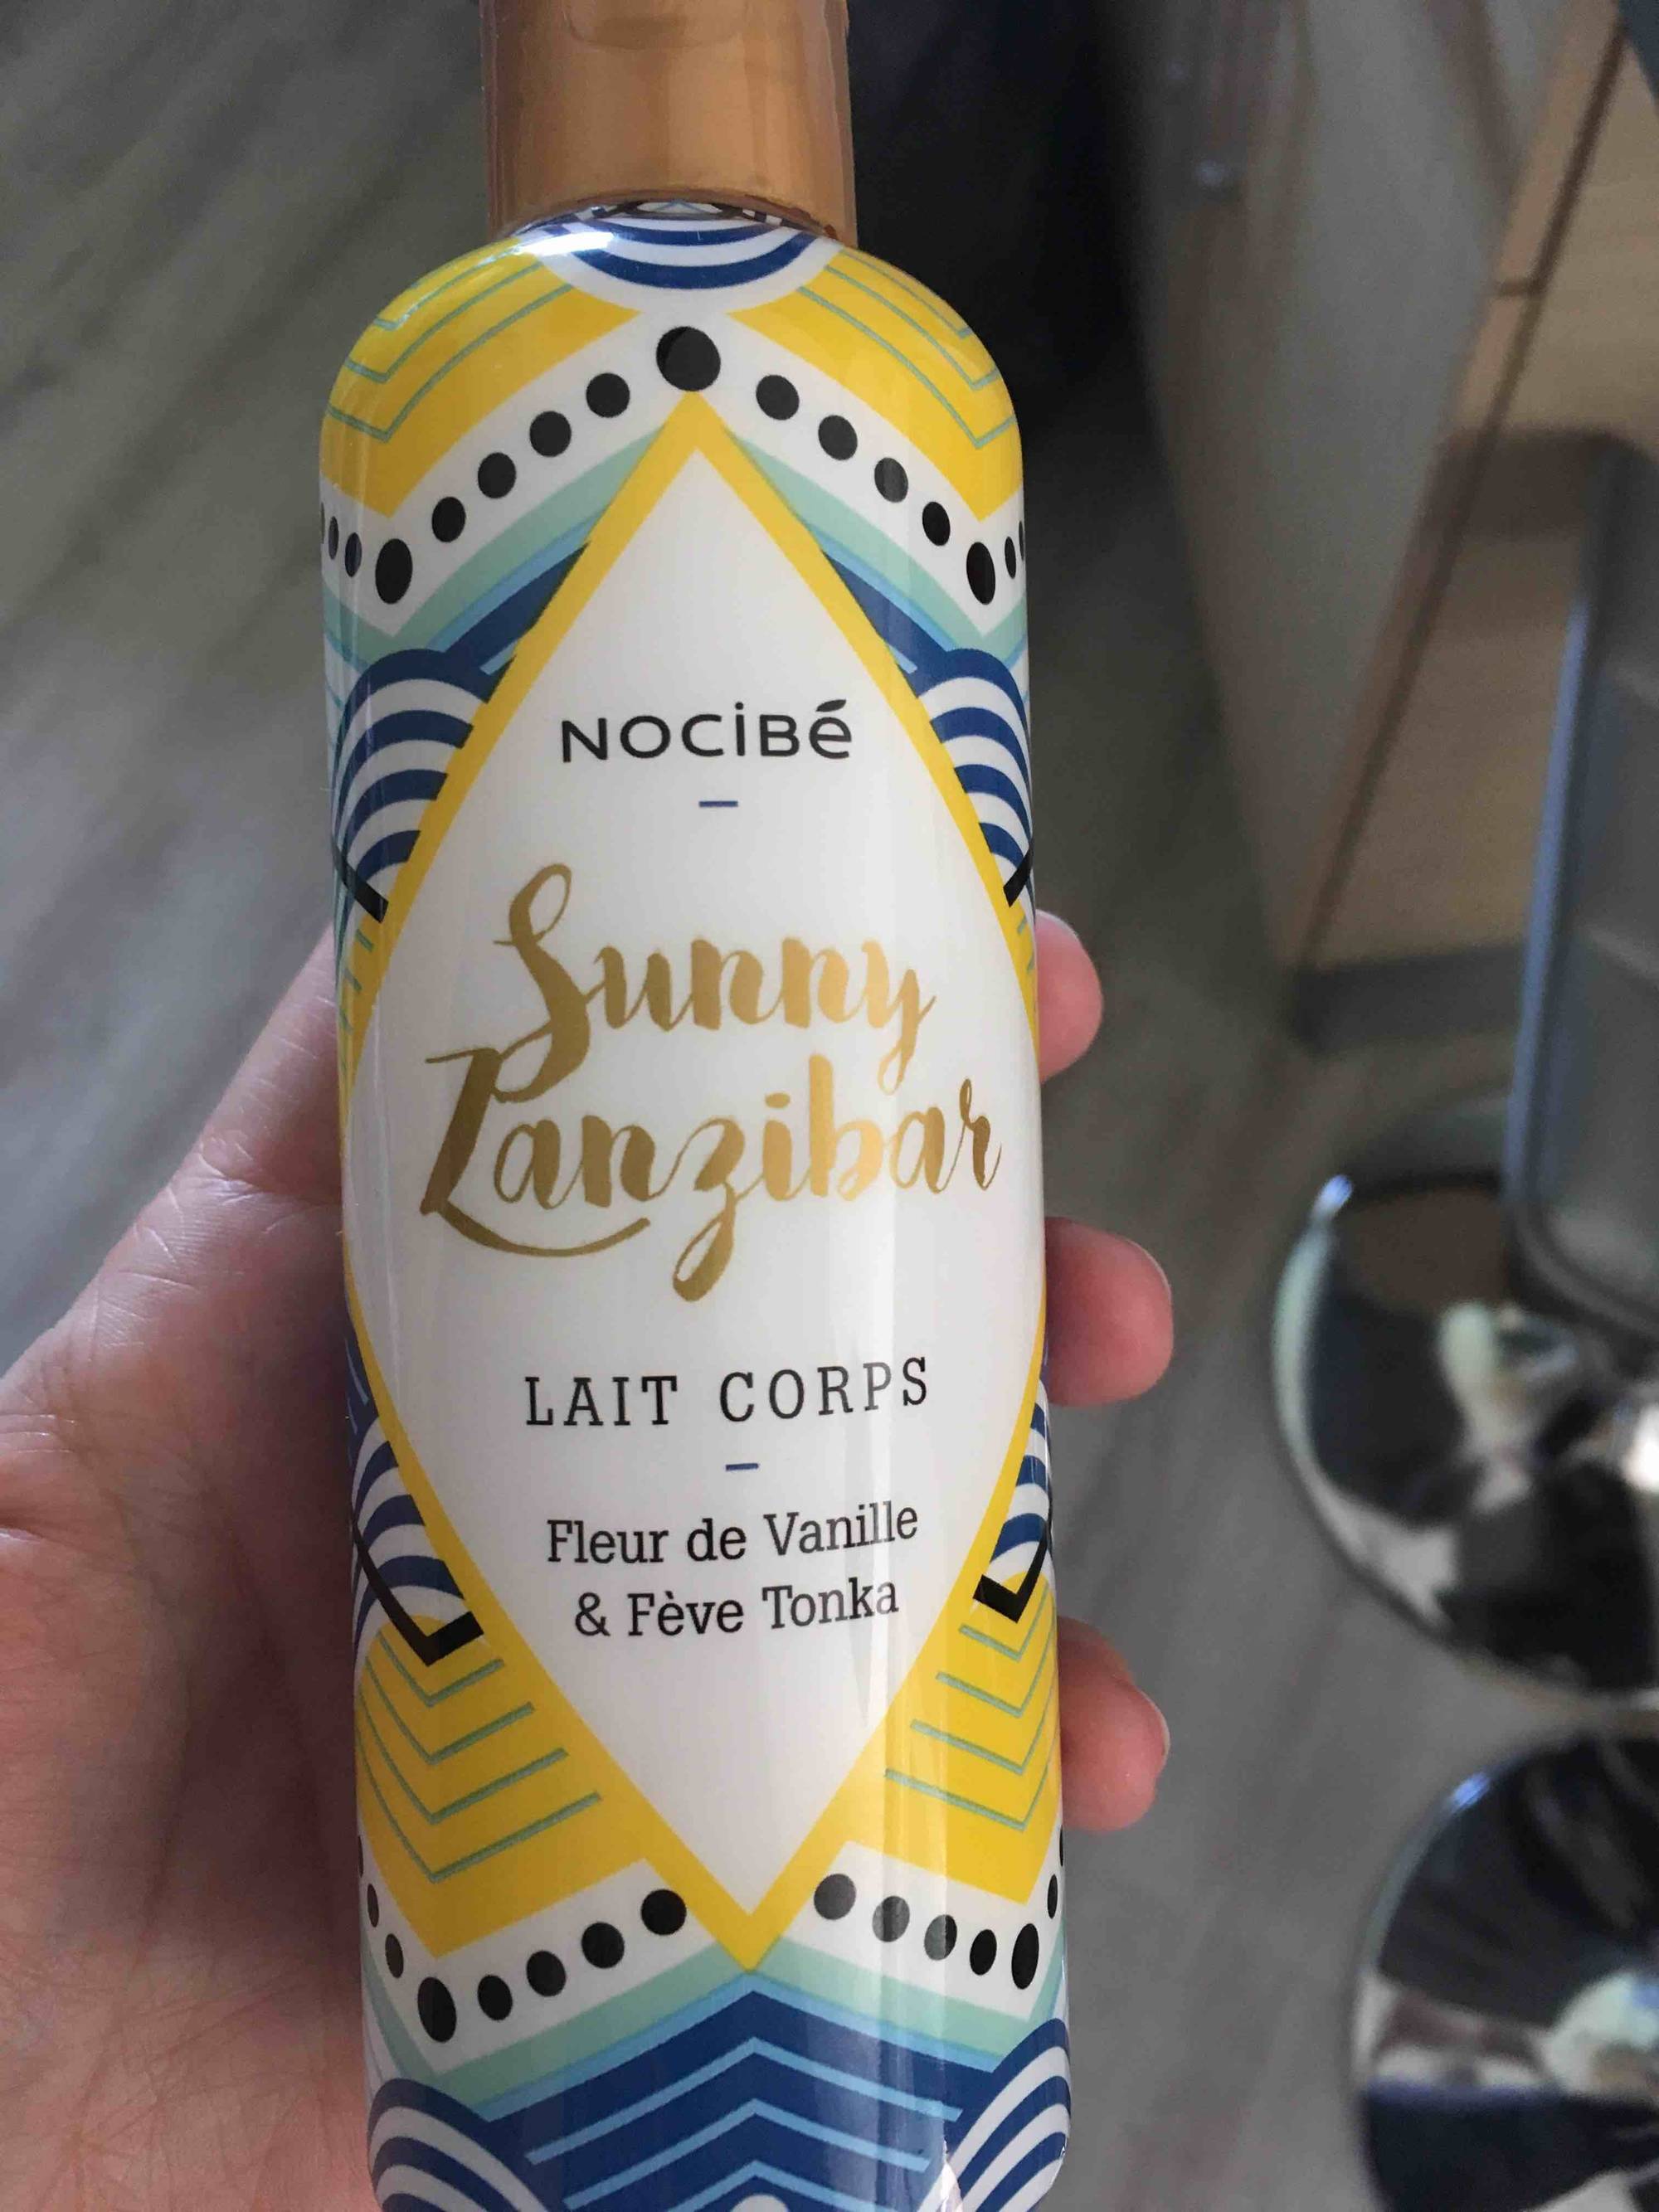 NOCIBÉ - Sunny zanzibar - Lait corps fleur de vanille & fève tonka